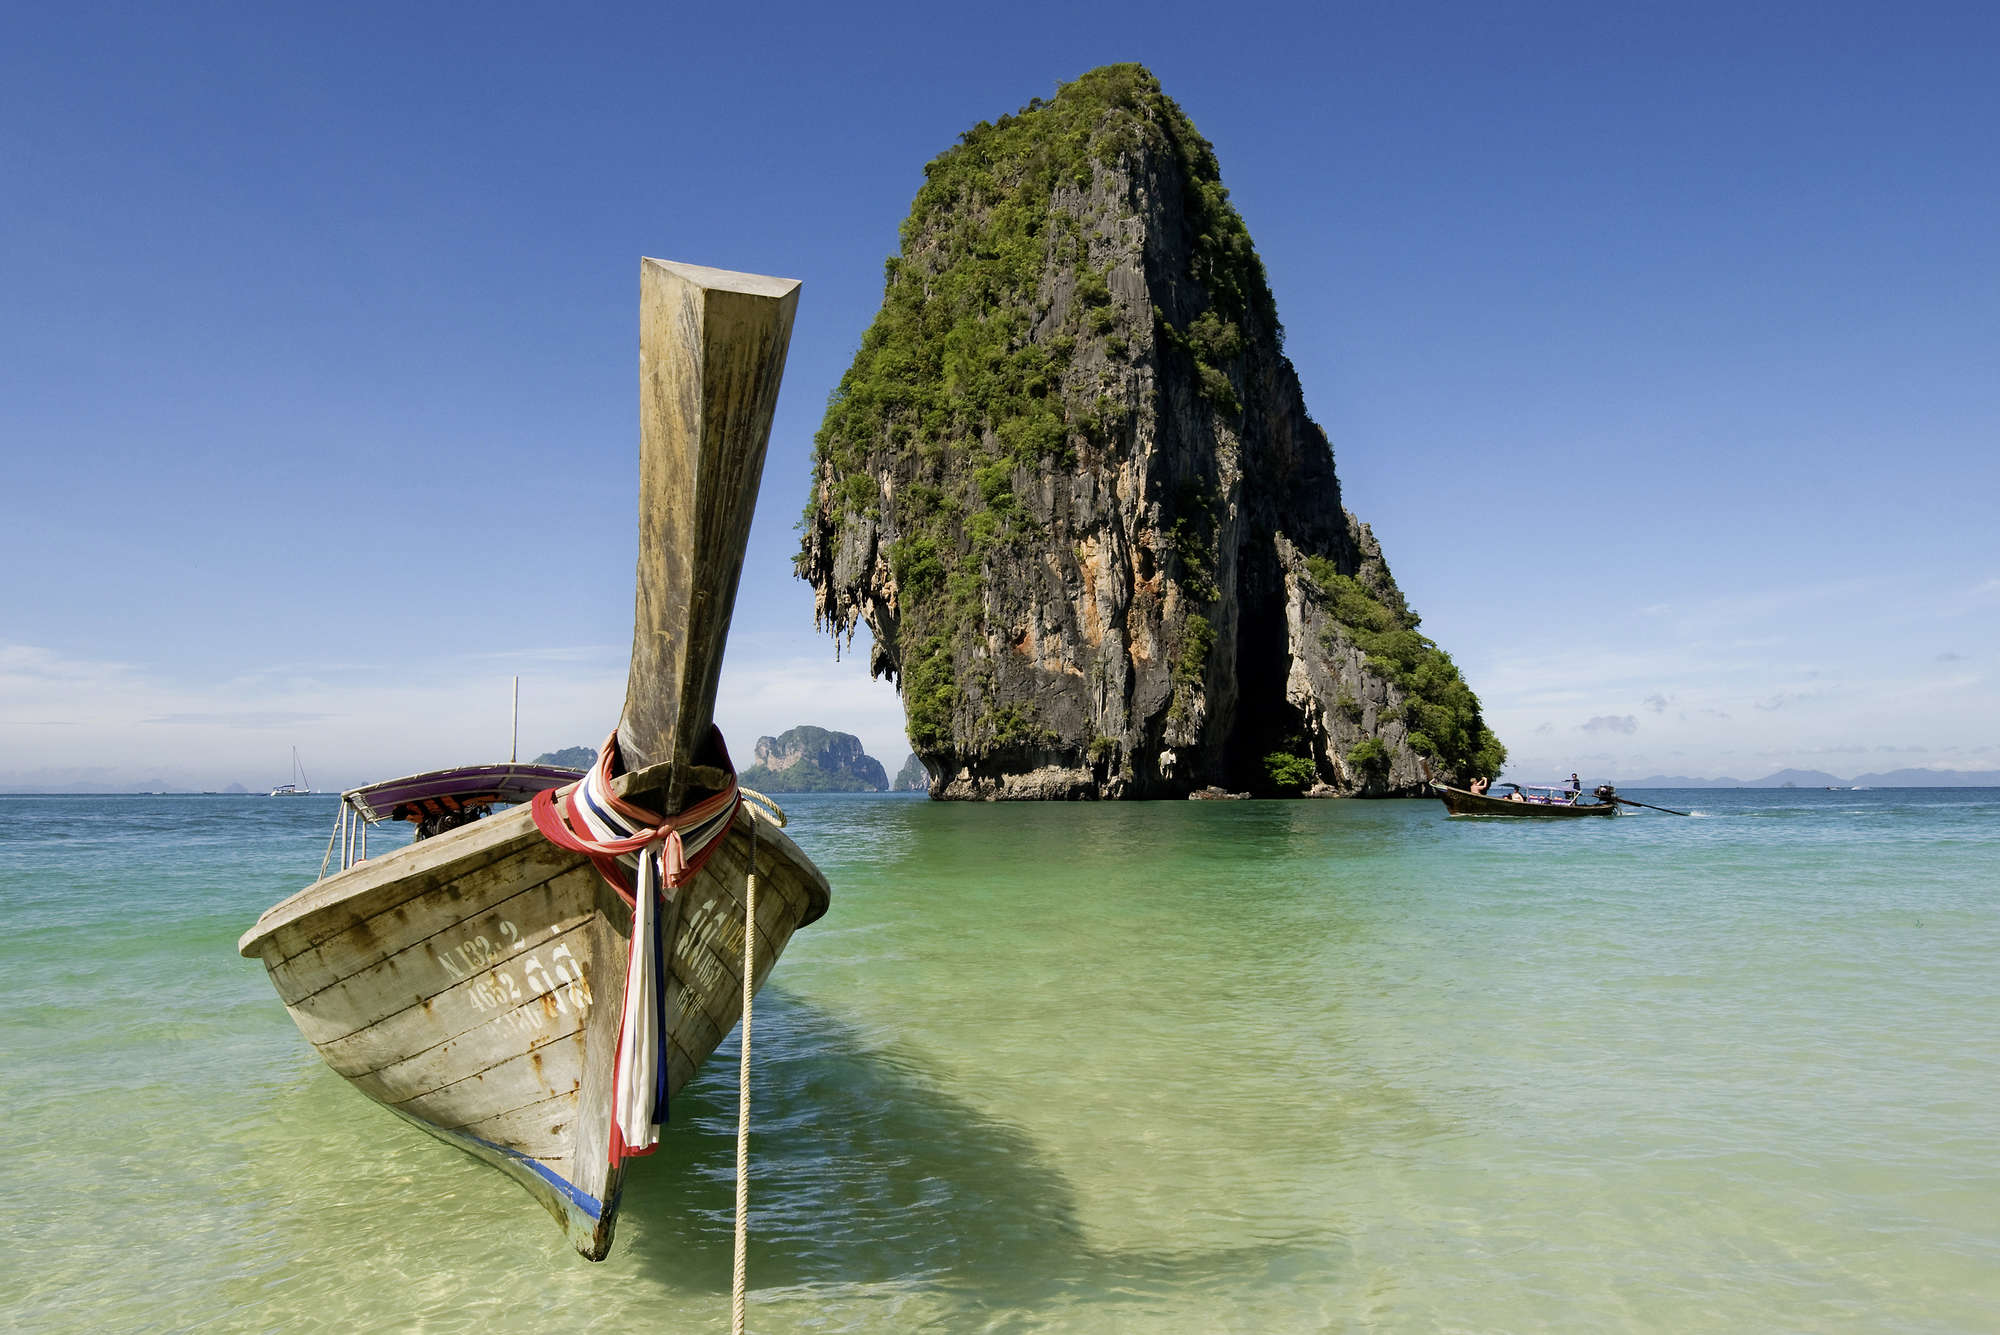             Fototapete Meer mit Boot und Felsen – Perlmutt Glattvlies
        